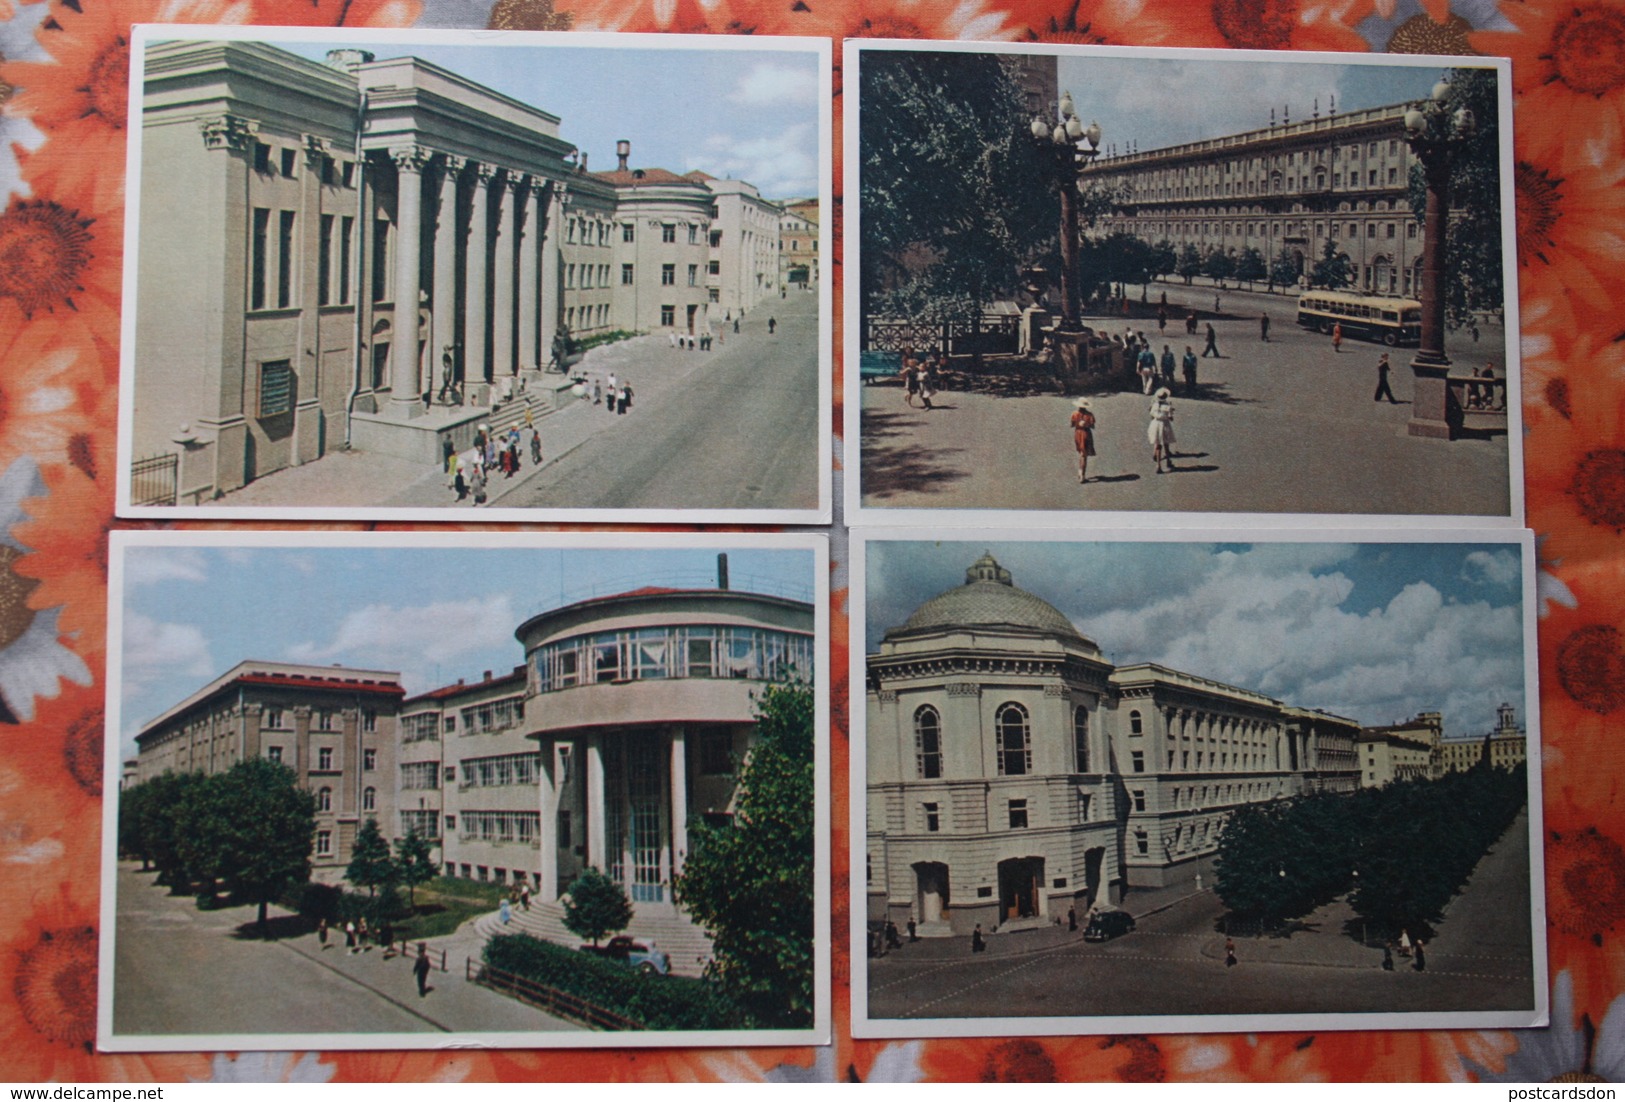 BELARUS. MINSK. Old PC. OLD USSR PC. 1950s - 12 Postcards Lot - Belarus